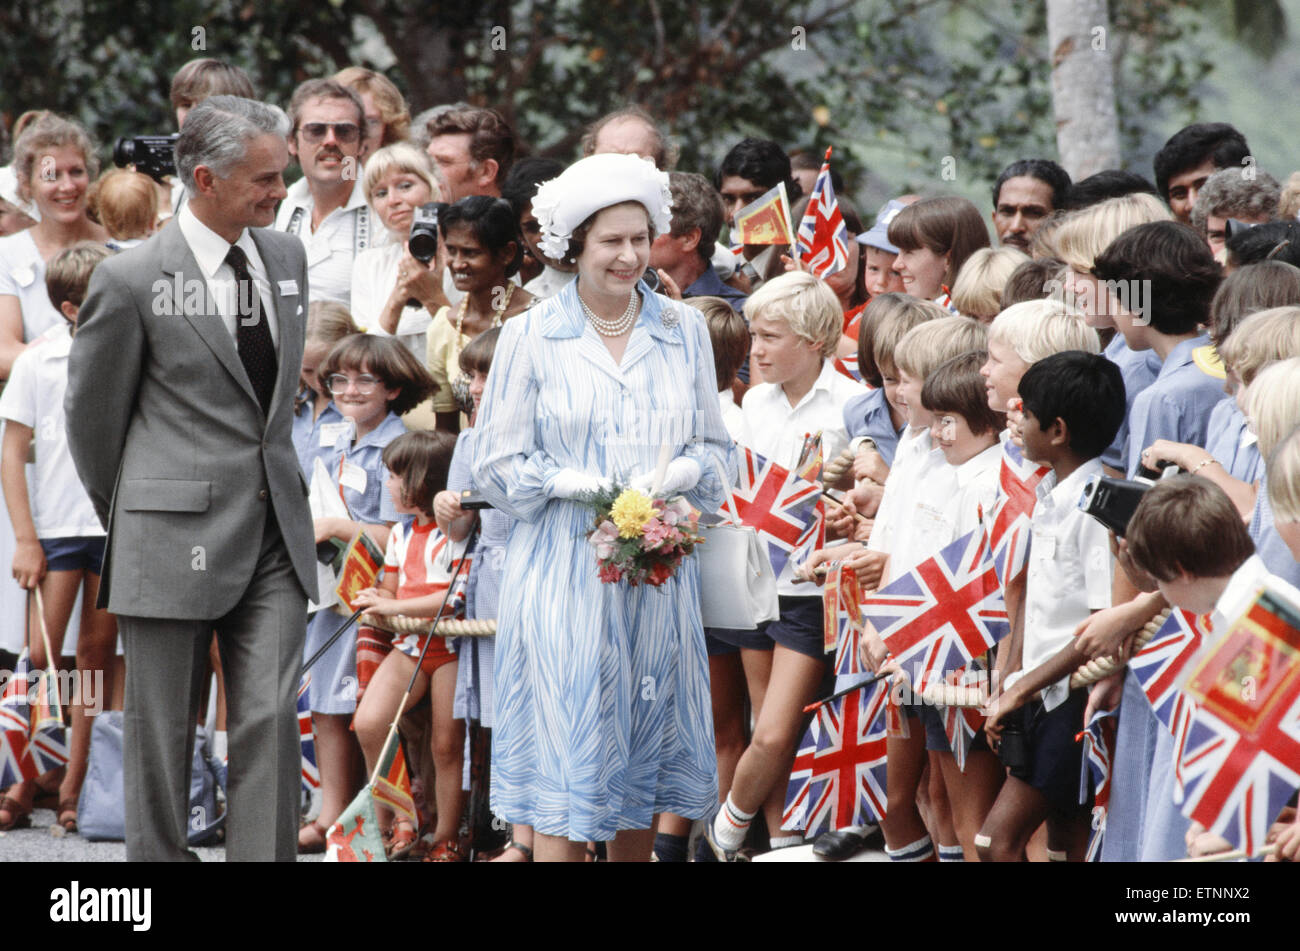 La visita real de la Reina Isabel II y el Príncipe Felipe, Duque de Edimburgo a Sri Lanka al final de su tour de Australasia. Foto: La Reina saludo multitudes de personas que se congregaron para darle la bienvenida. De octubre de 1981. Foto de stock